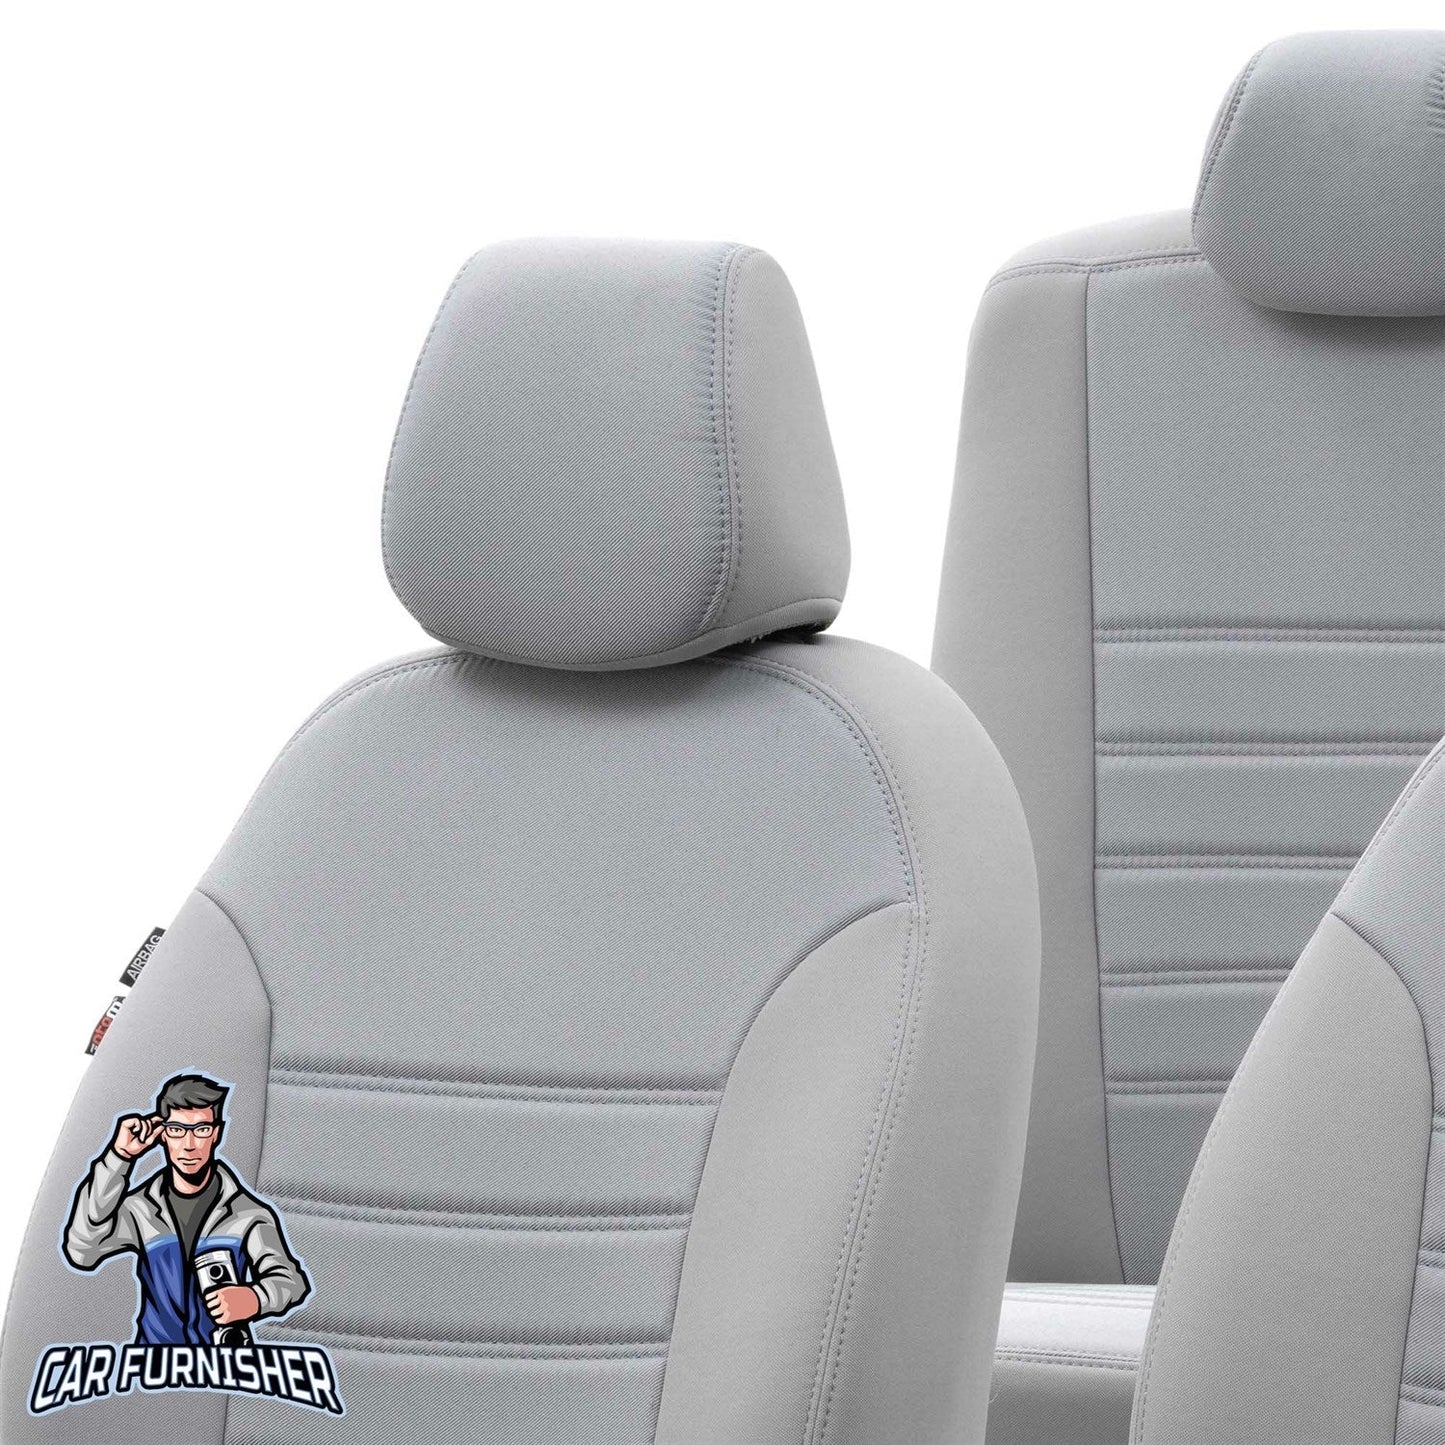 Chevrolet Cruze Seat Covers Original Jacquard Design Light Gray Jacquard Fabric